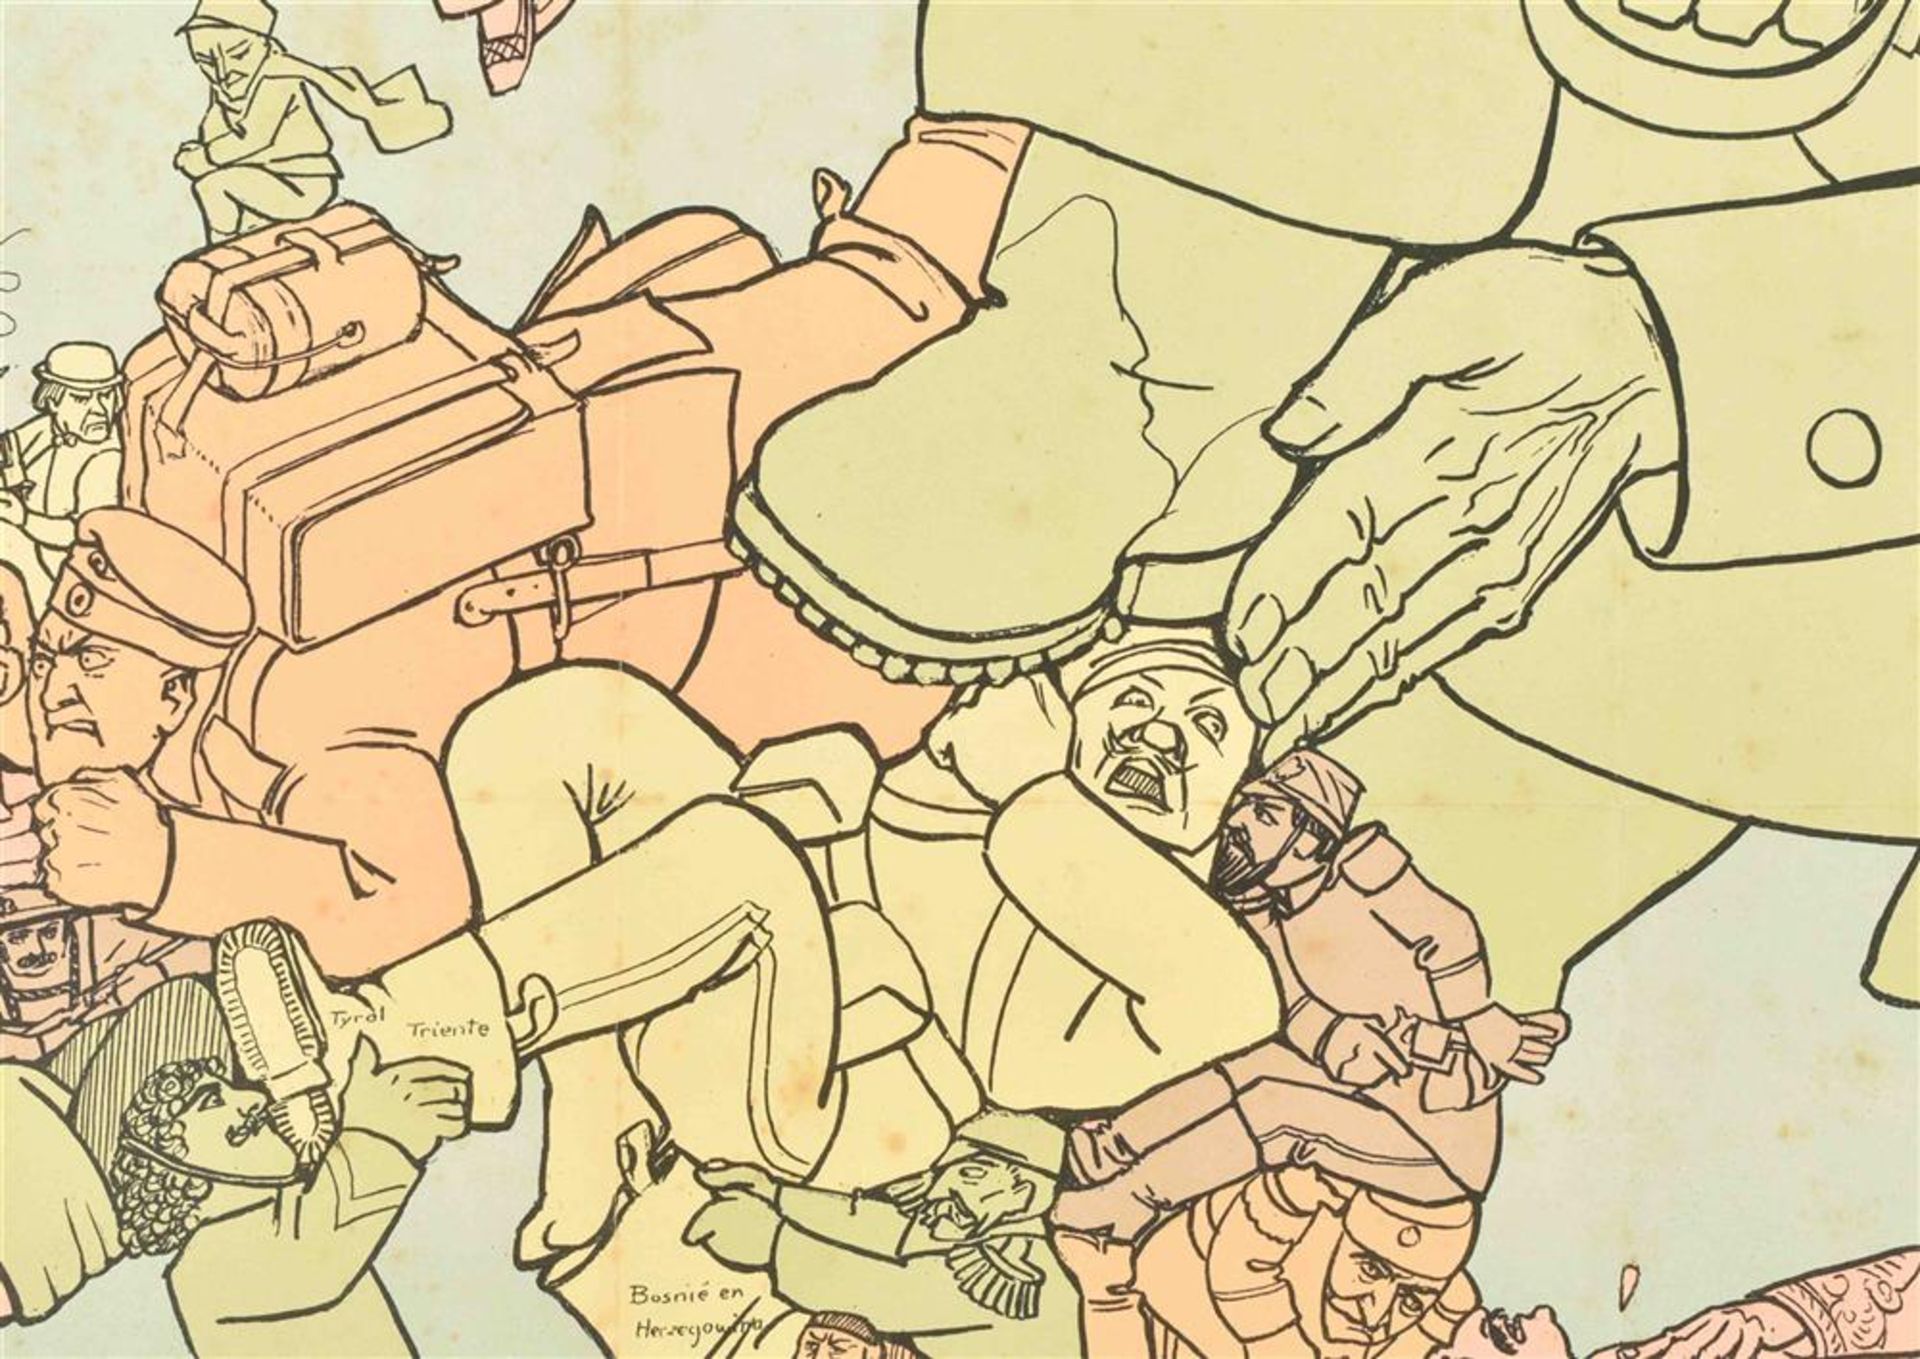 [Caricatural maps] Het Gekkenhuis (oud liedje, nieuwe wijs) - Image 4 of 4